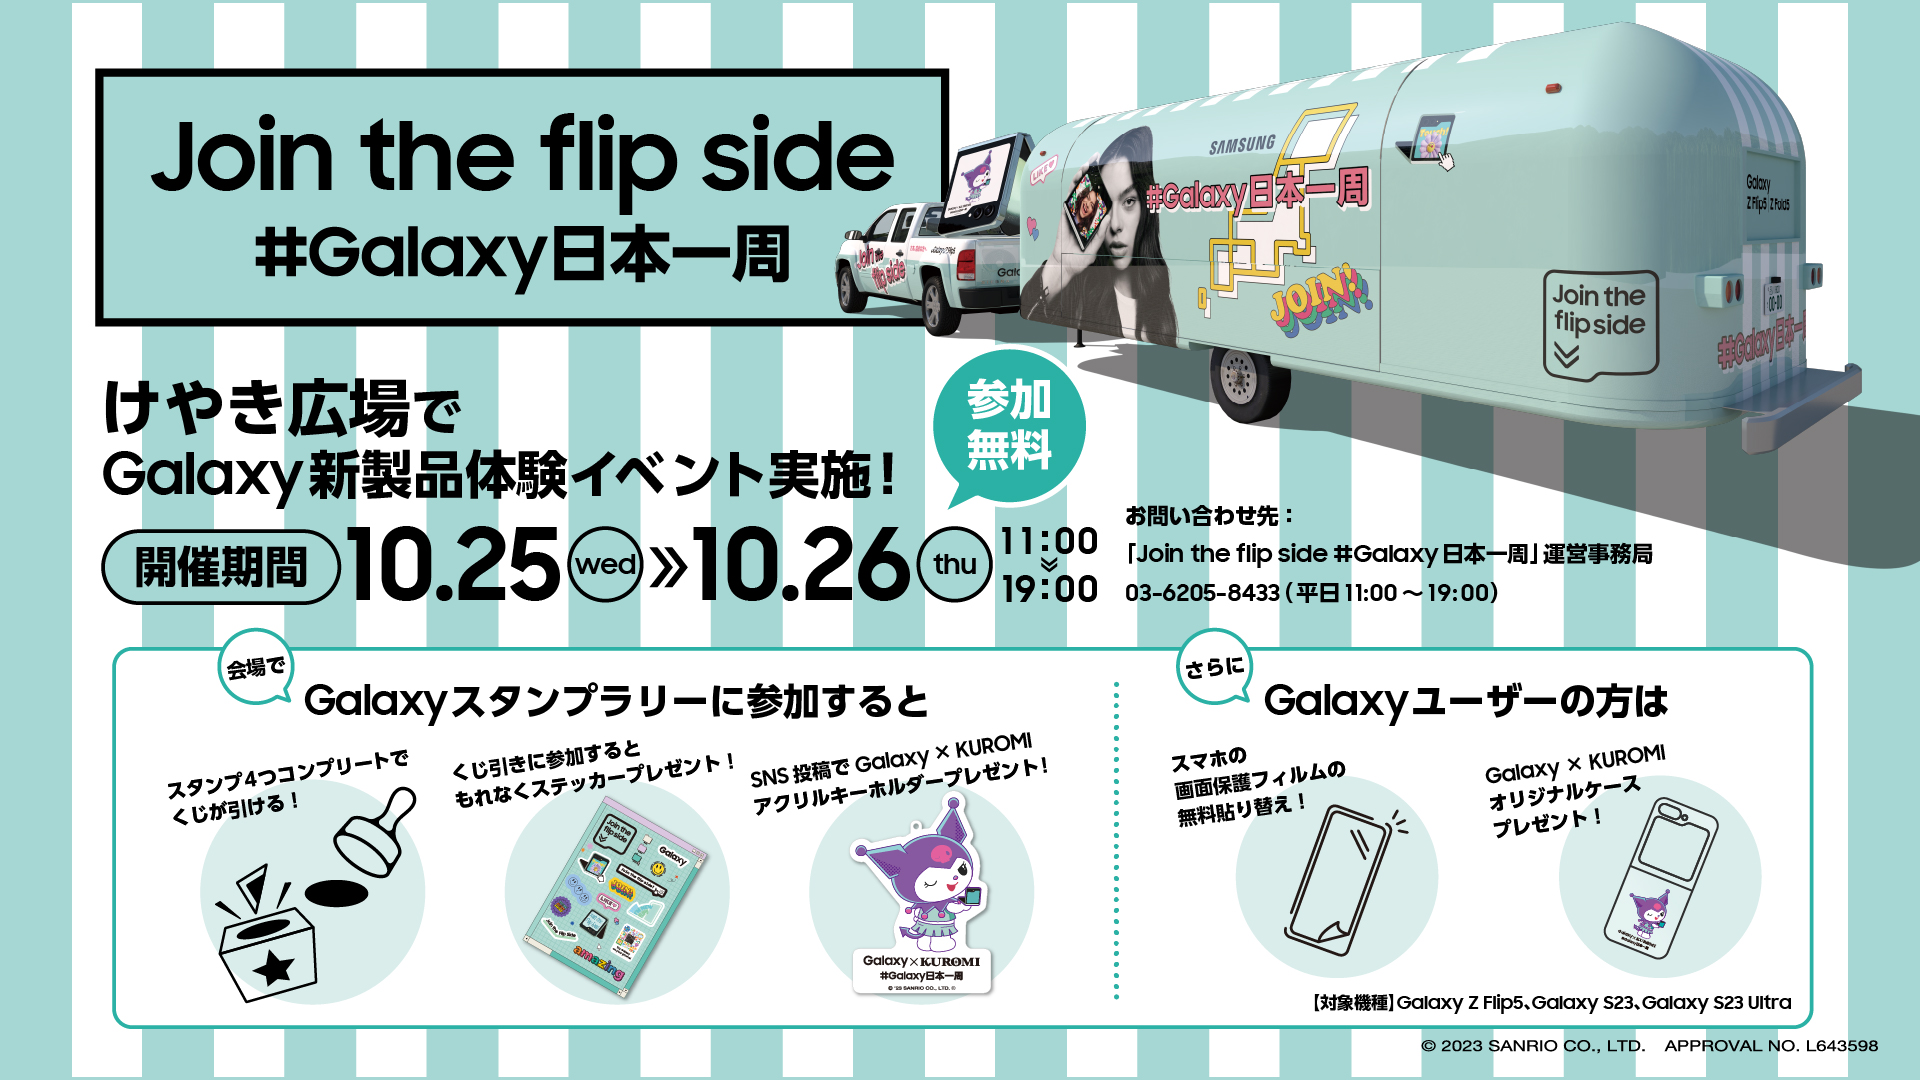 Join the flip side #Galaxy日本一周のイメージ画像